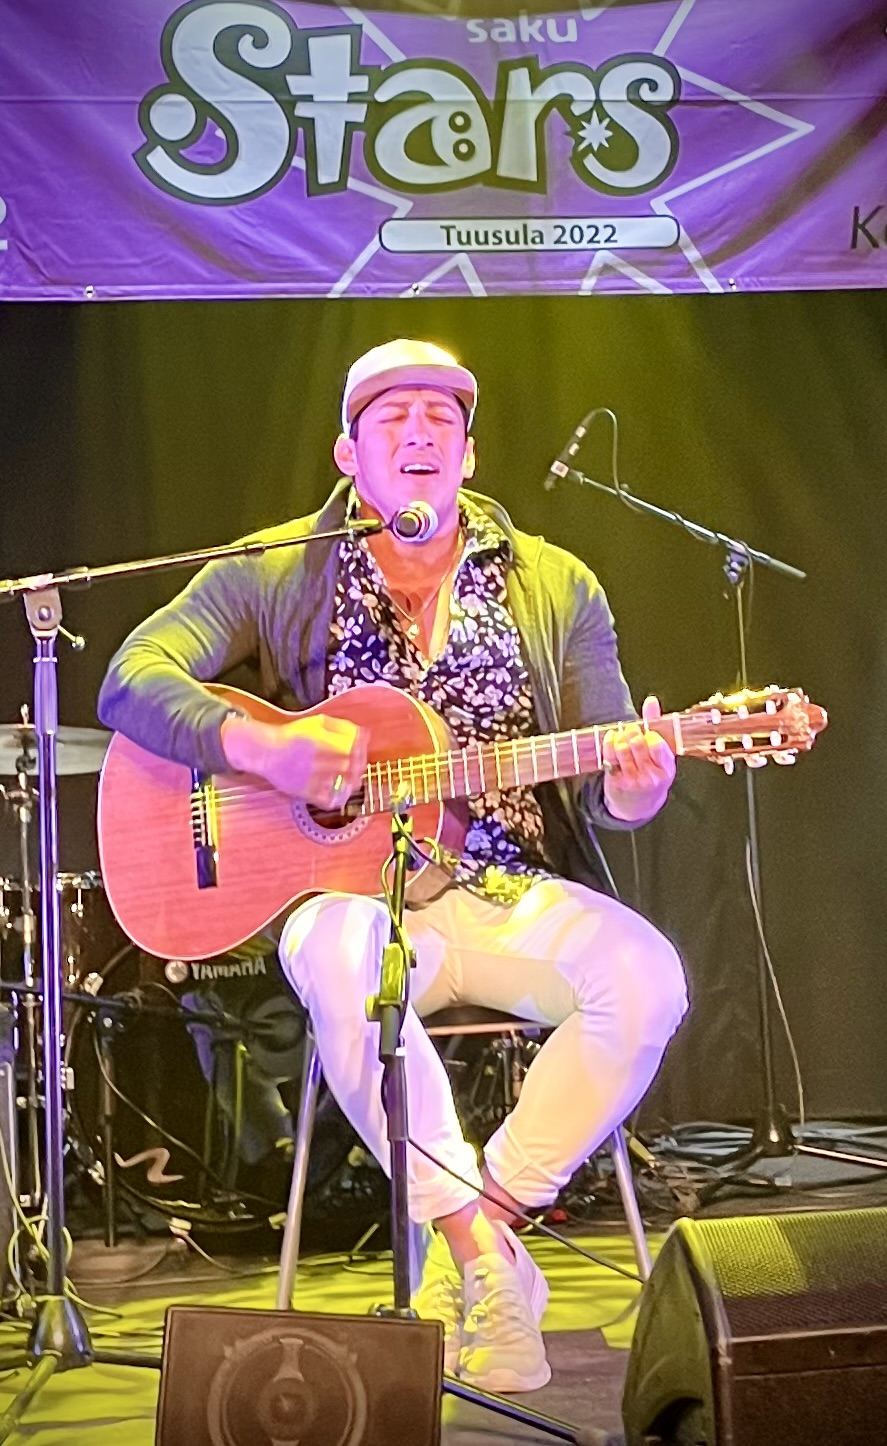 Lippalakkipäinen mies istuu lavalla soittaen kitaraa ja laulaen.